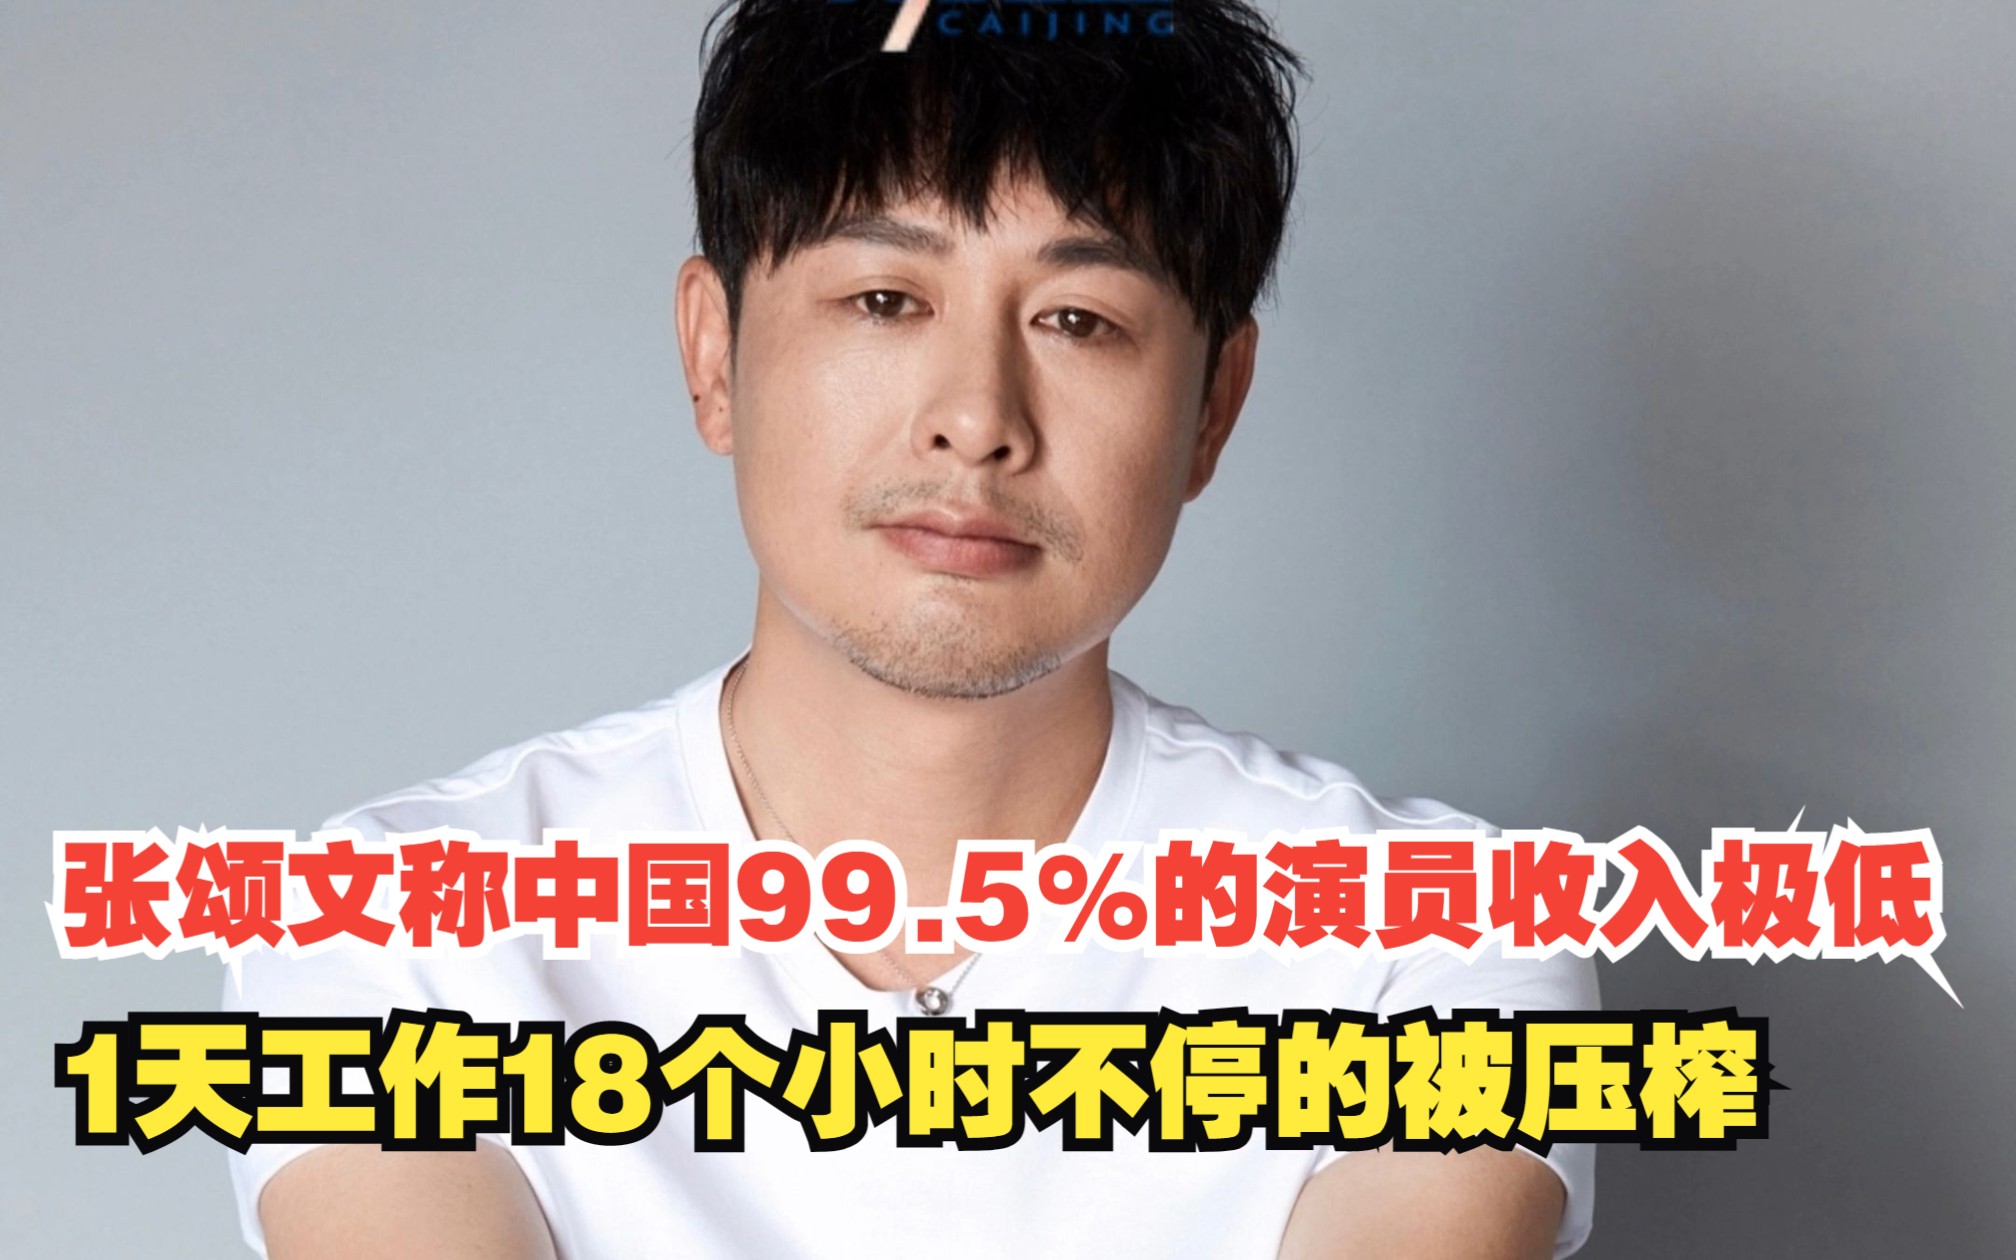 张颂文称中国99.5%的演员收入极低，1天工作18个小时不停的被压榨，对此，你怎么看？